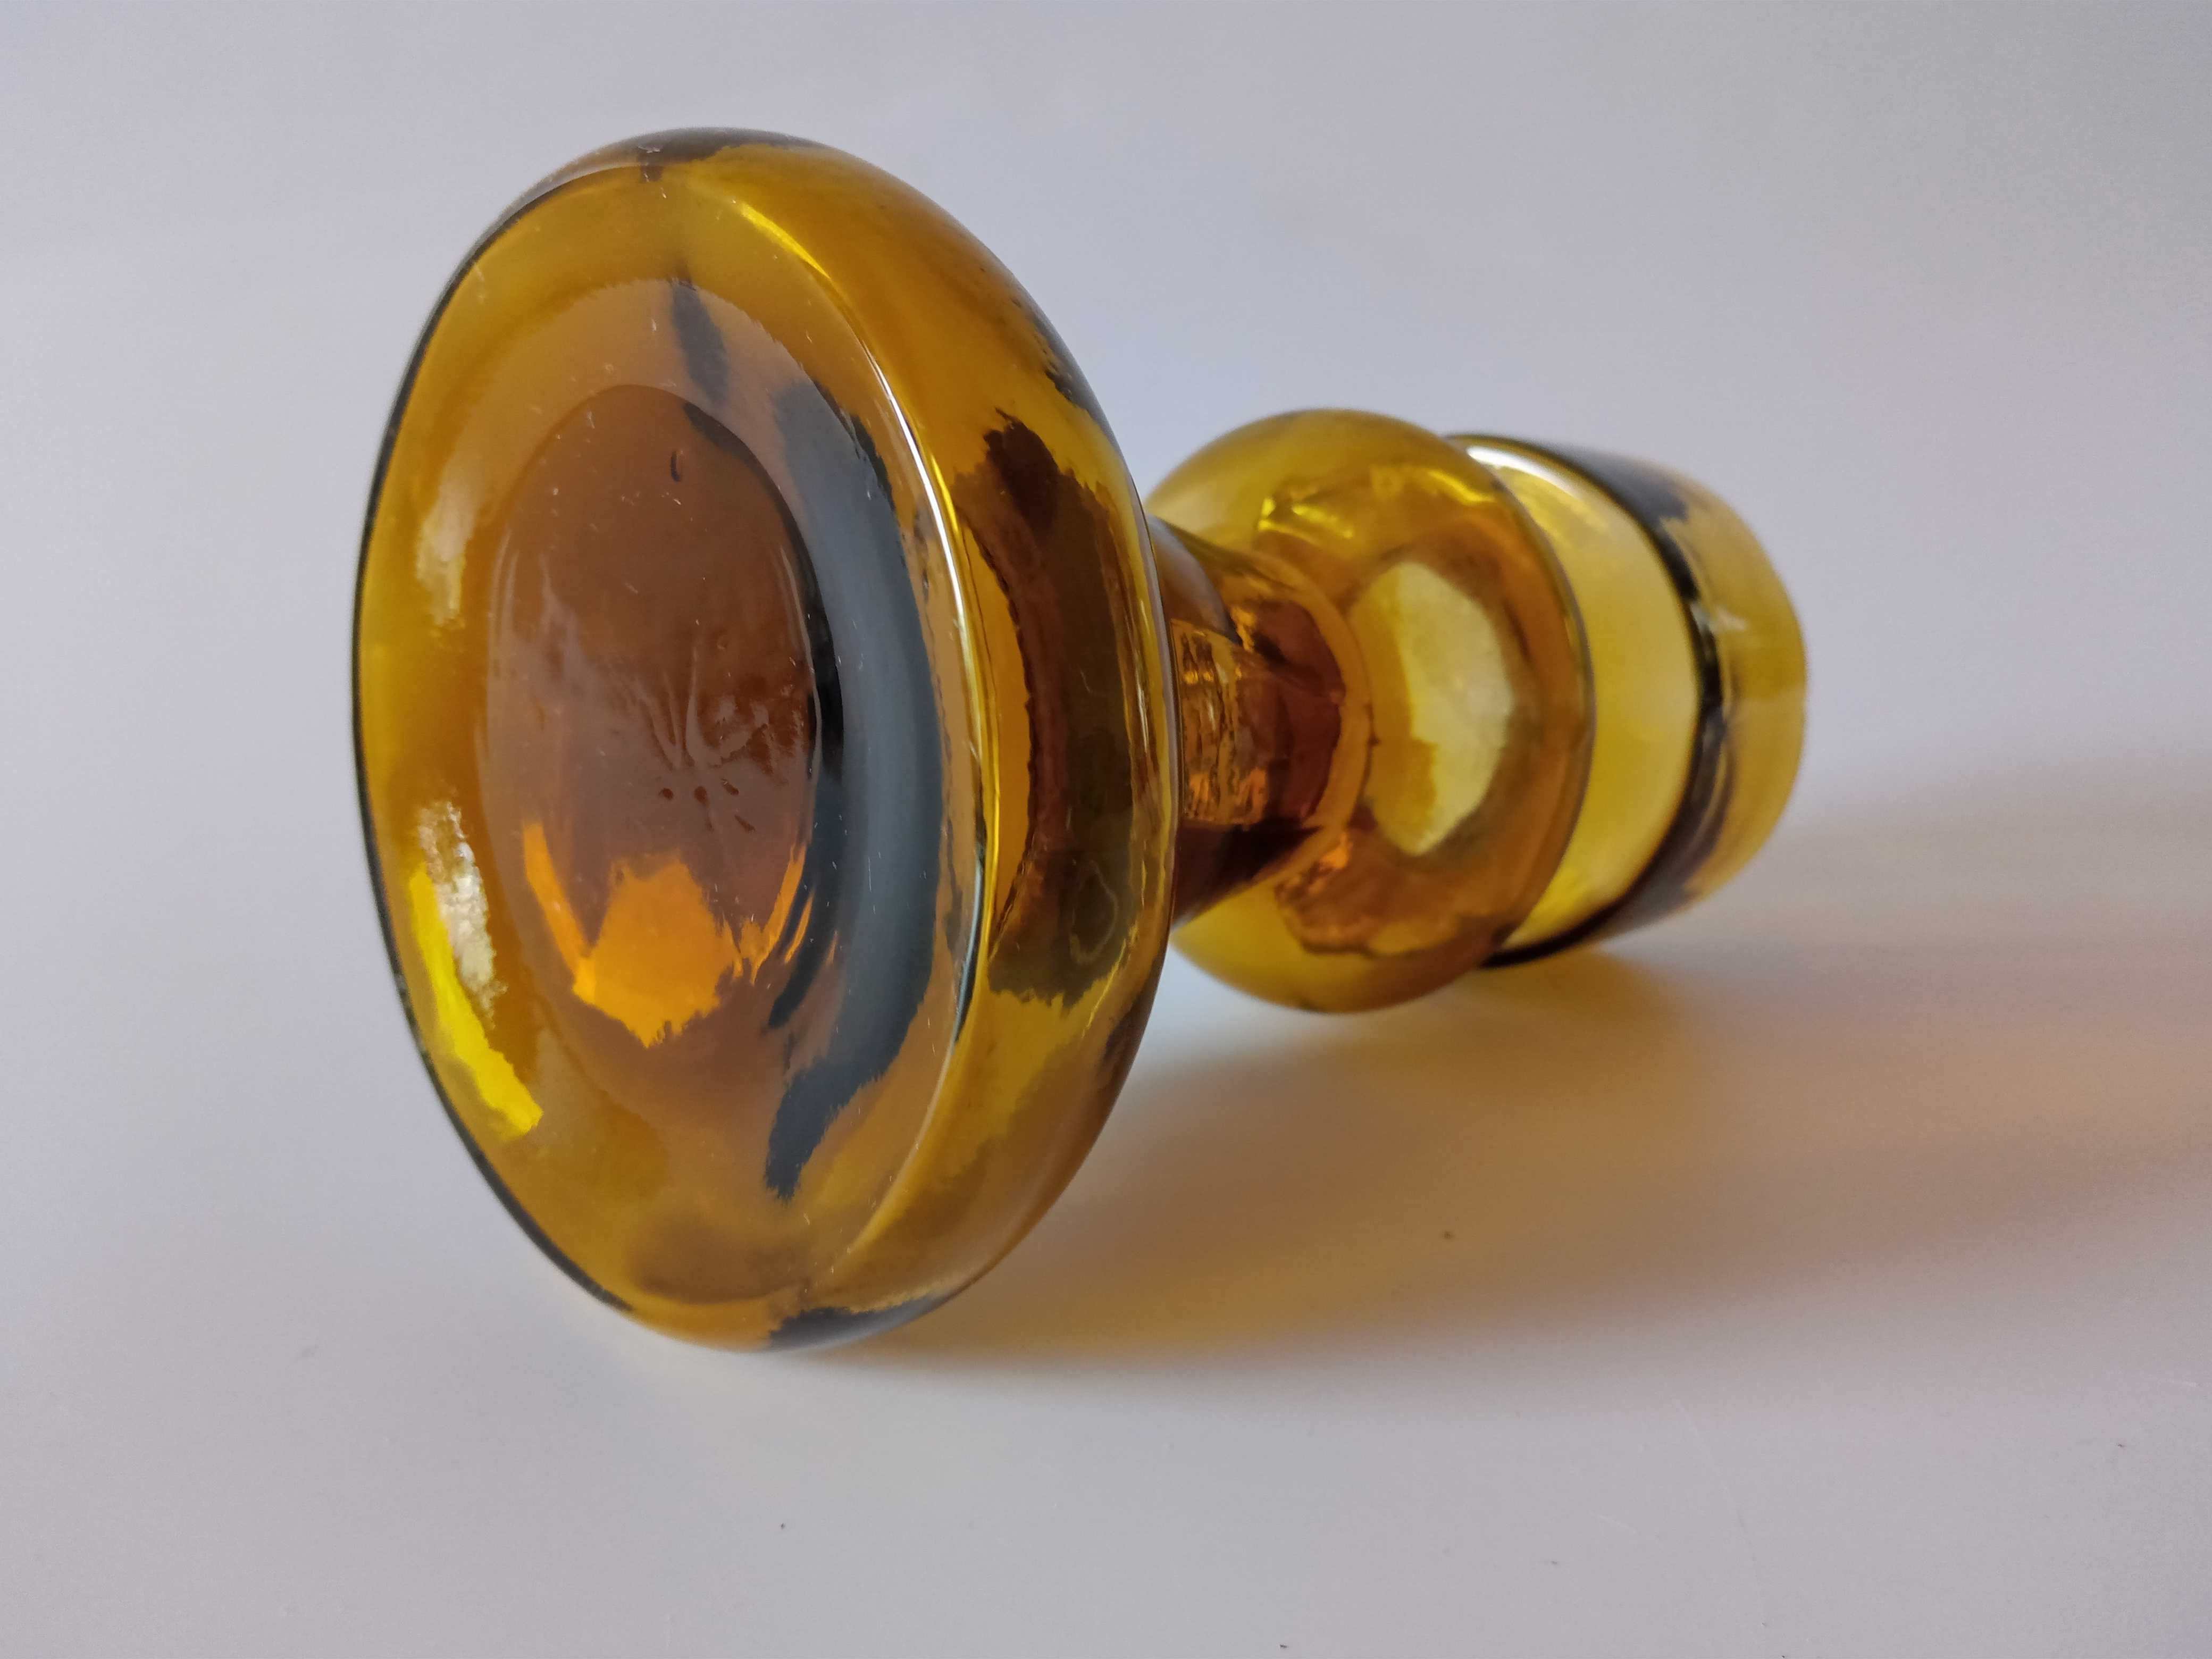 Ingrid Glasshutte miodowy szklany świecznik